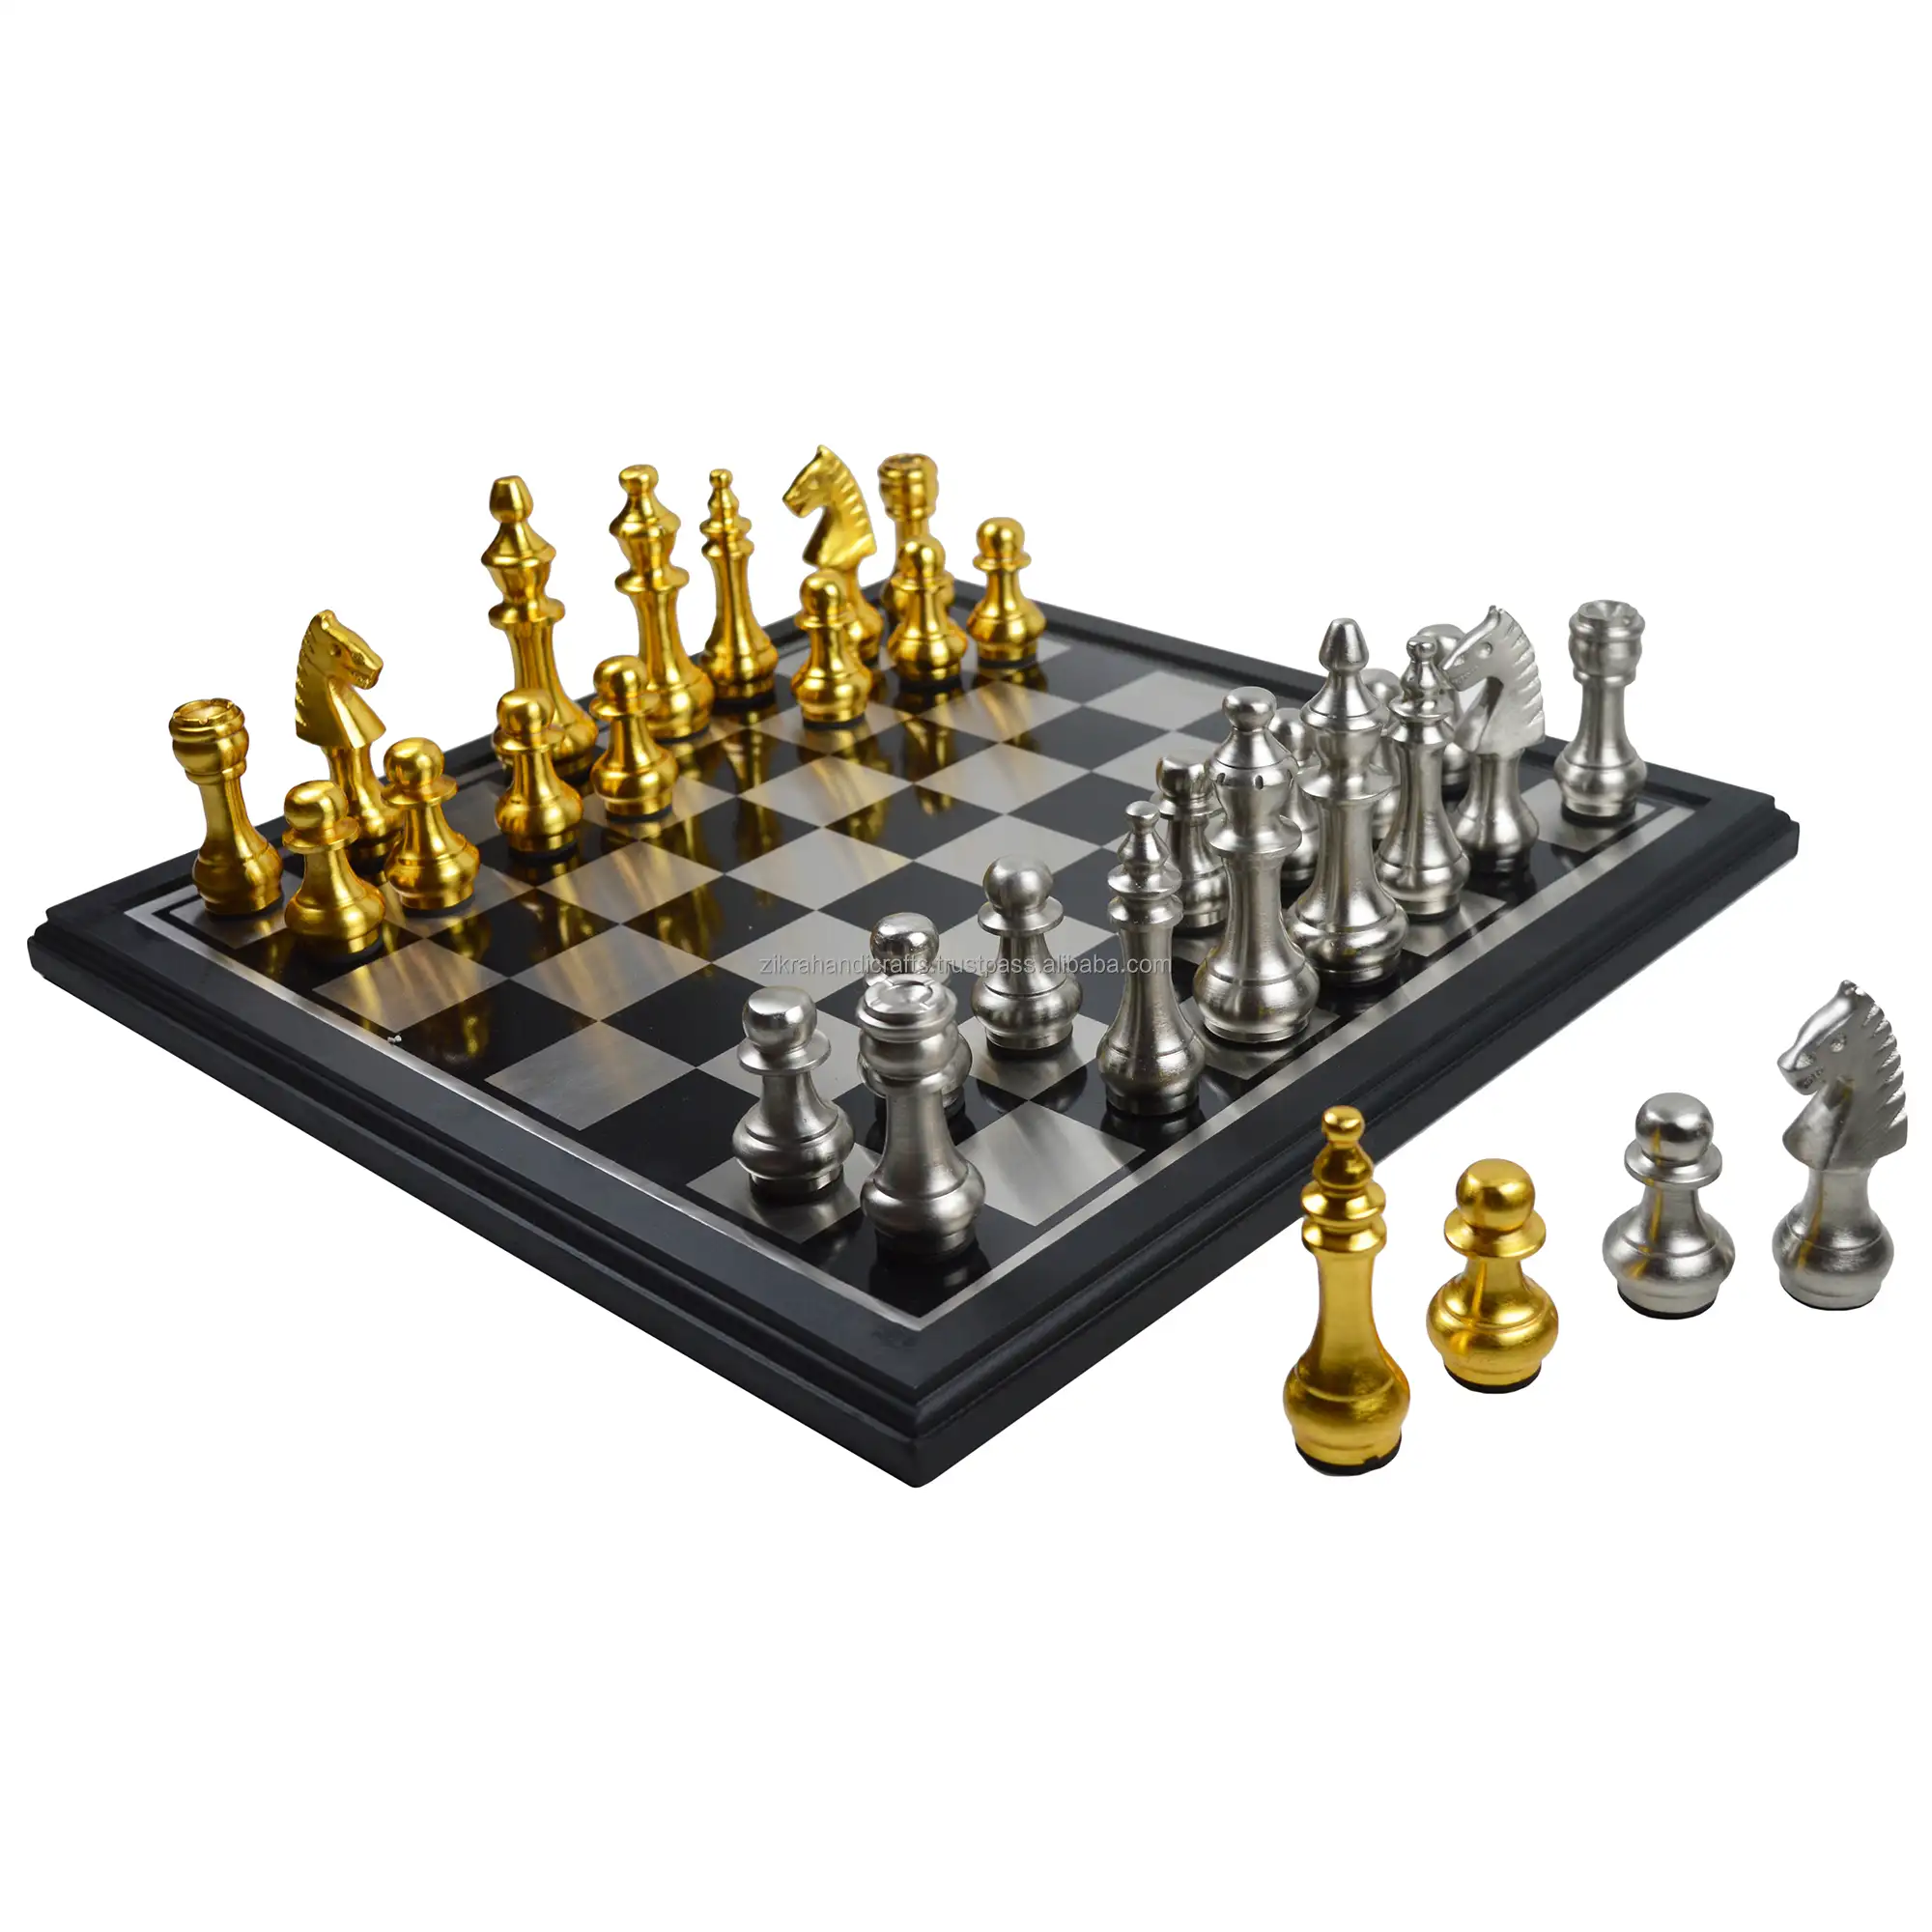 光沢のある仕上げデザインの最高のテーマデザインチェスセット色とメッキの装飾木製チェスゲーム